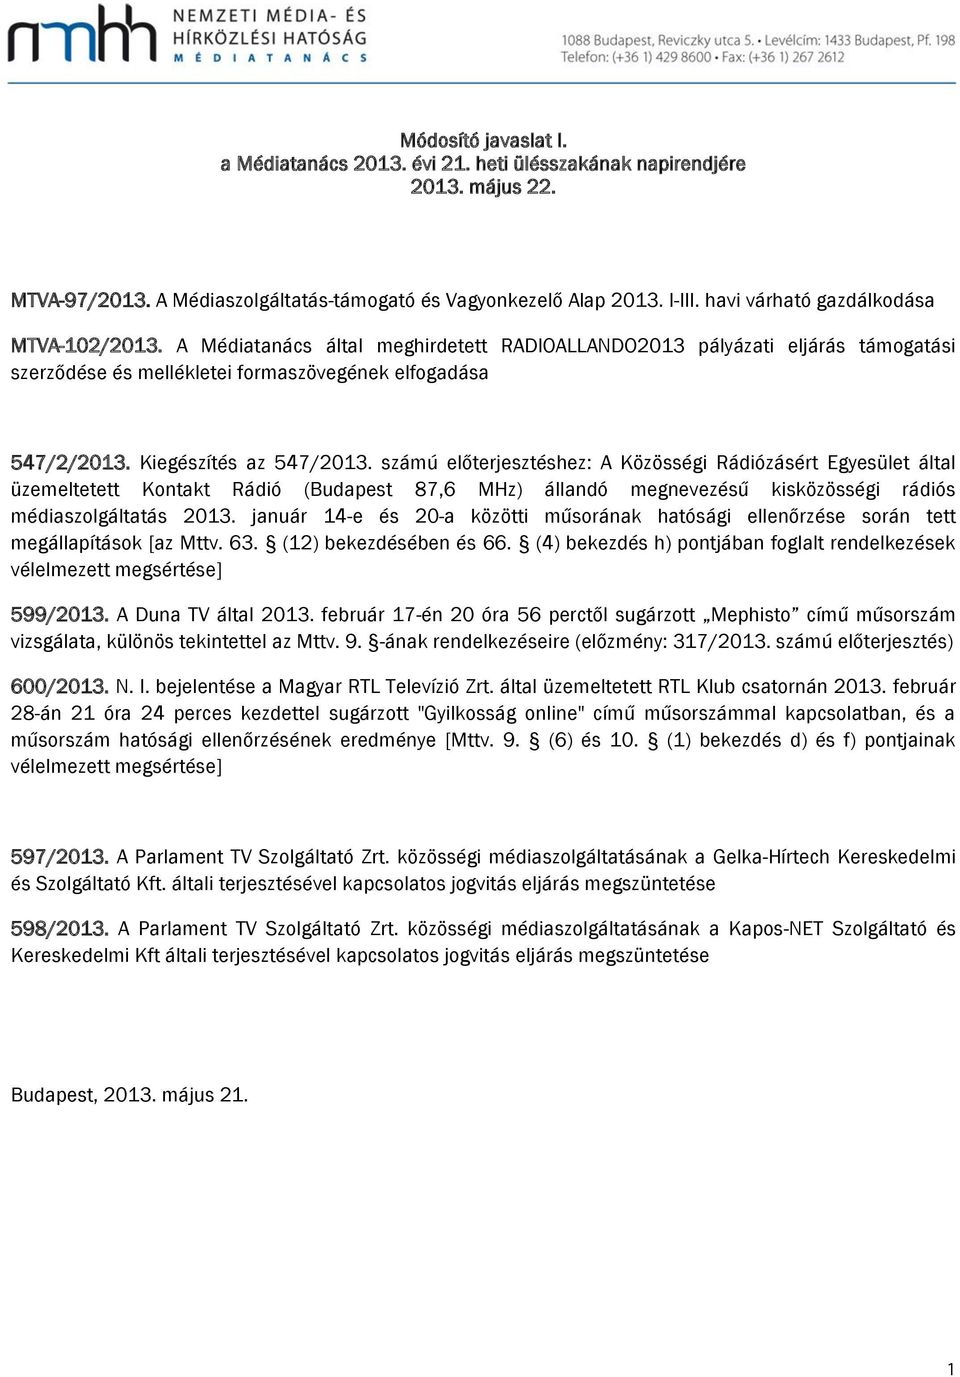 Kiegészítés az 547/2013. számú előterjesztéshez: A Közösségi Rádiózásért Egyesület által üzemeltetett Kontakt Rádió (Budapest 87,6 MHz) állandó megnevezésű kisközösségi rádiós médiaszolgáltatás 2013.